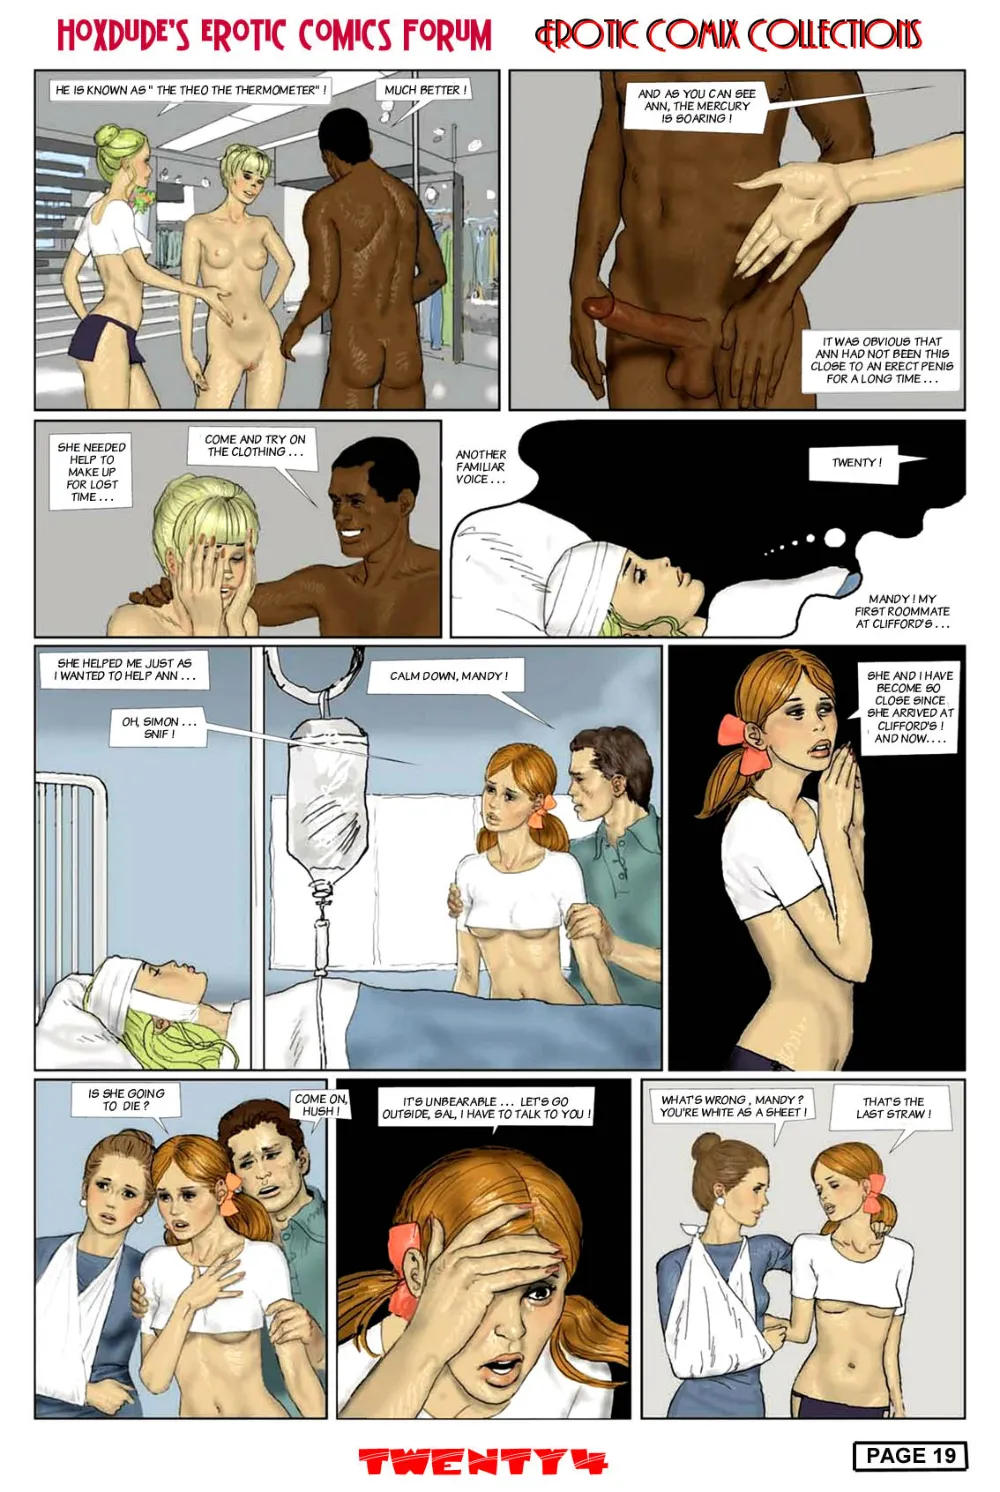 Twenty 4 – Erich Von Gotha (Hoxdude Erotic) - Page 22